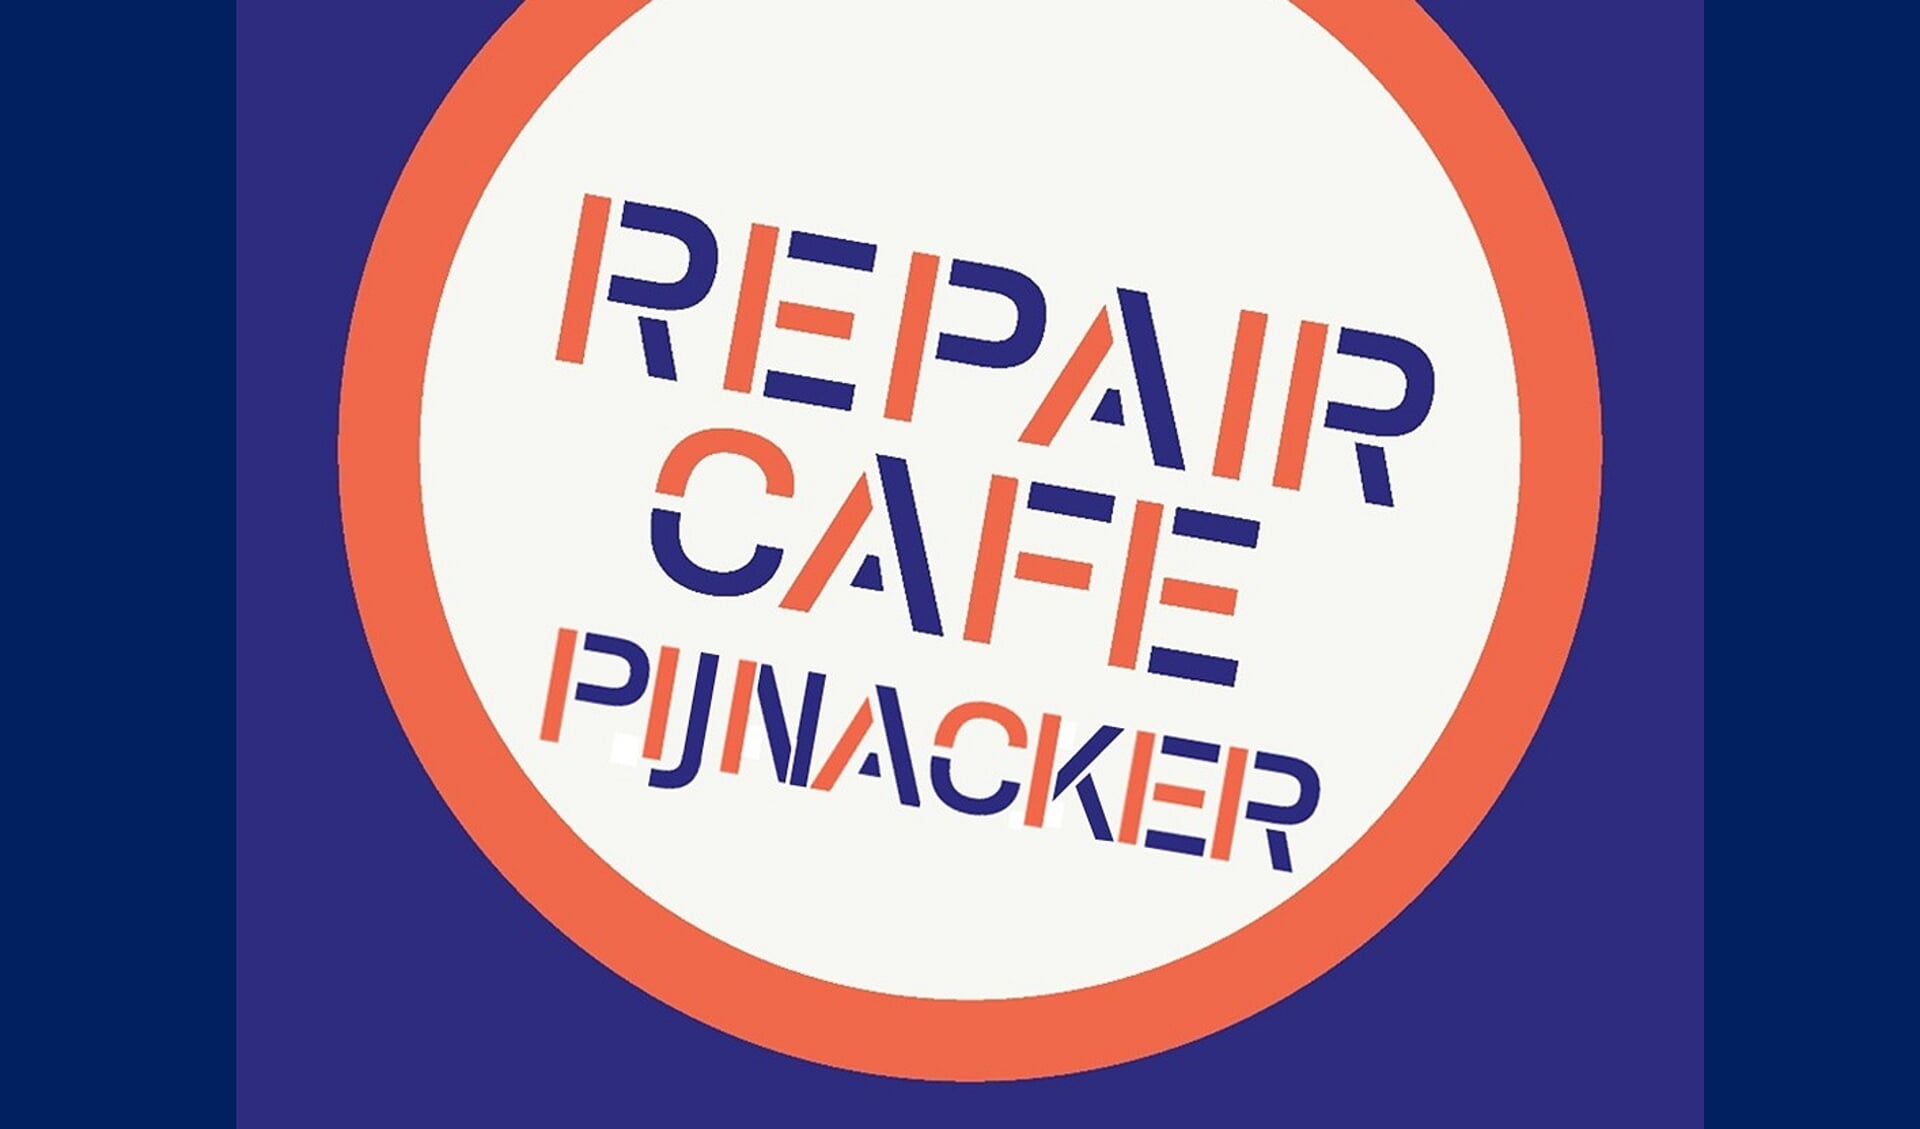 REPAIR CAFE PIJNACKER OPEN